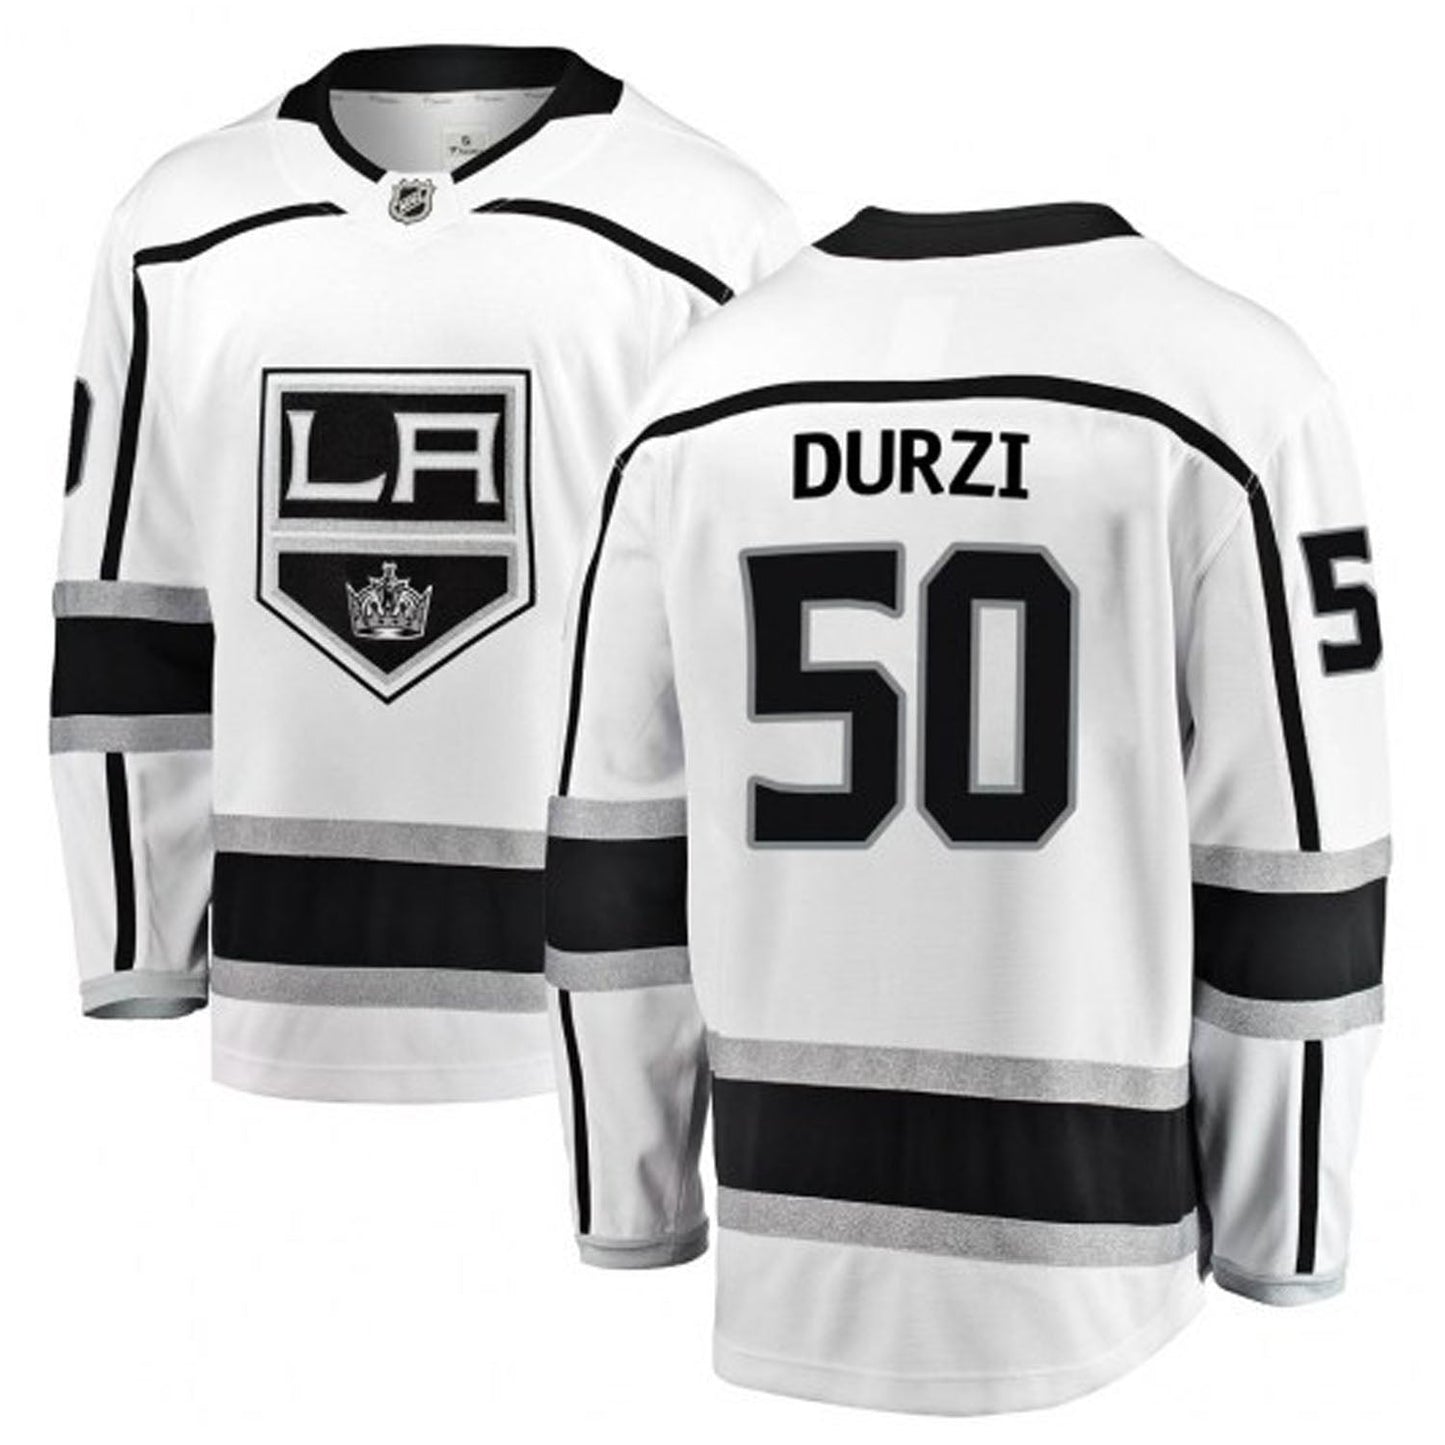 NHL Sean Durzi La Kings 50 Jersey